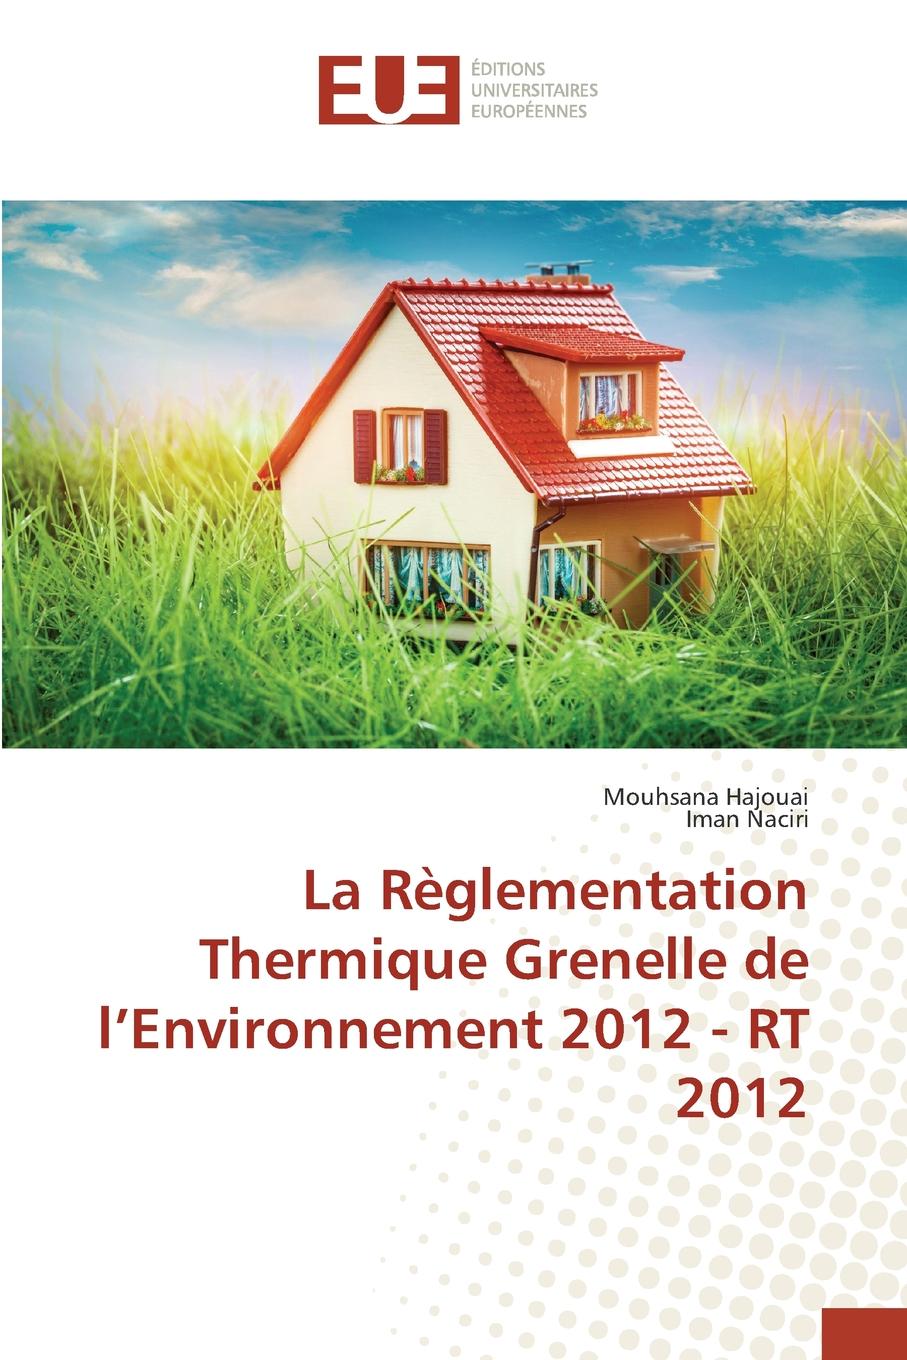 La reglementation thermique grenelle de l environnement 2012 - rt 2012